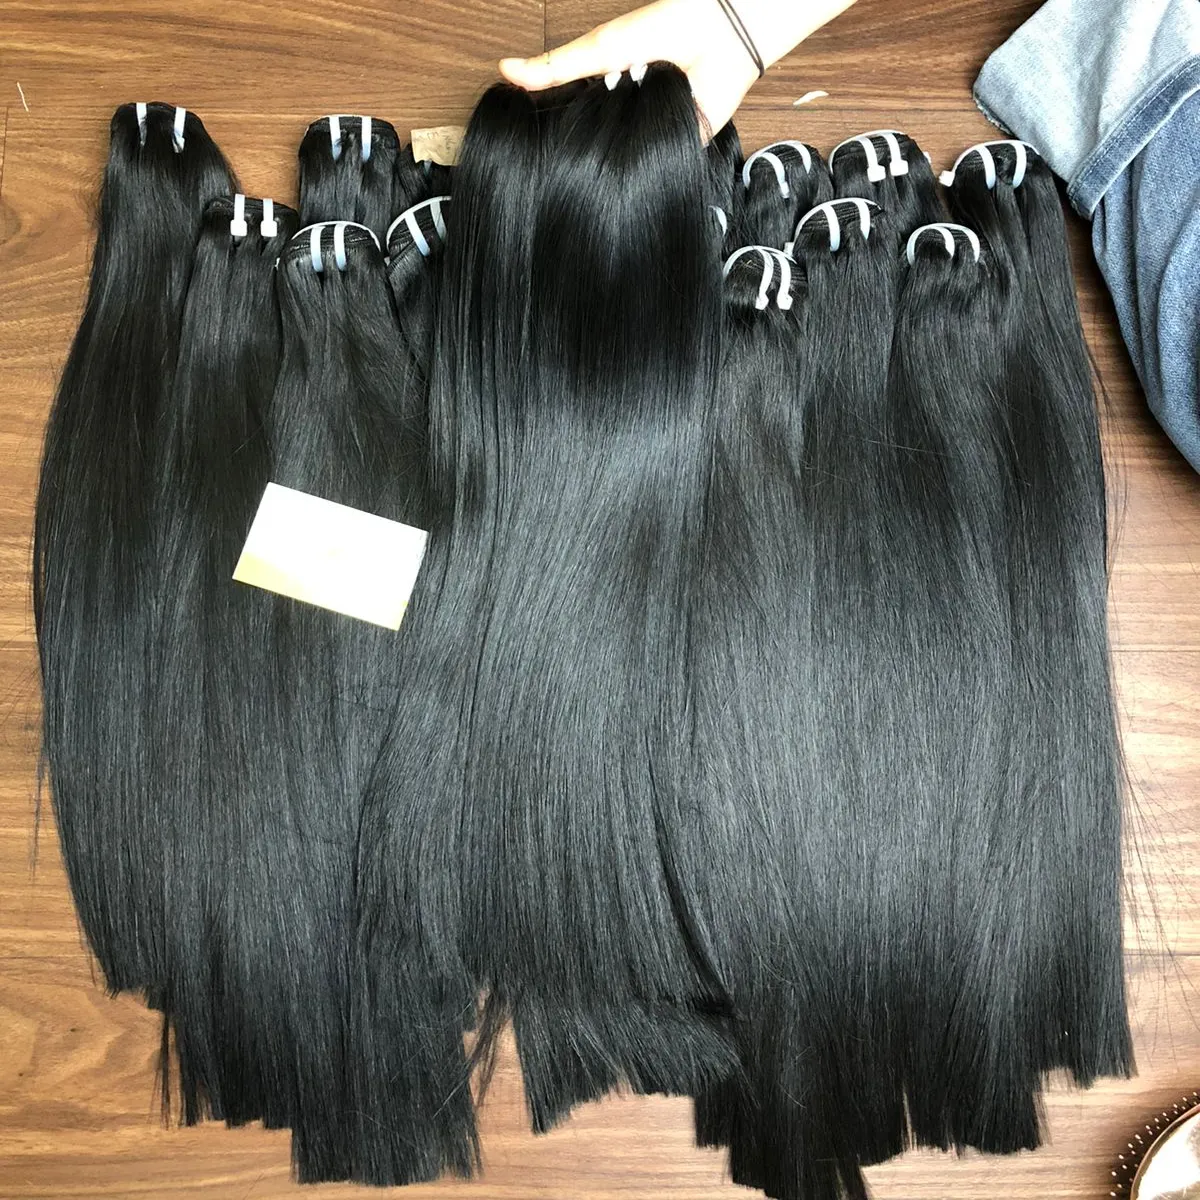 Top Quality capelli capelli vergini non trasformati capelli umani di durata 1-3 anni di capelli russi con il listino prezzi all'ingrosso